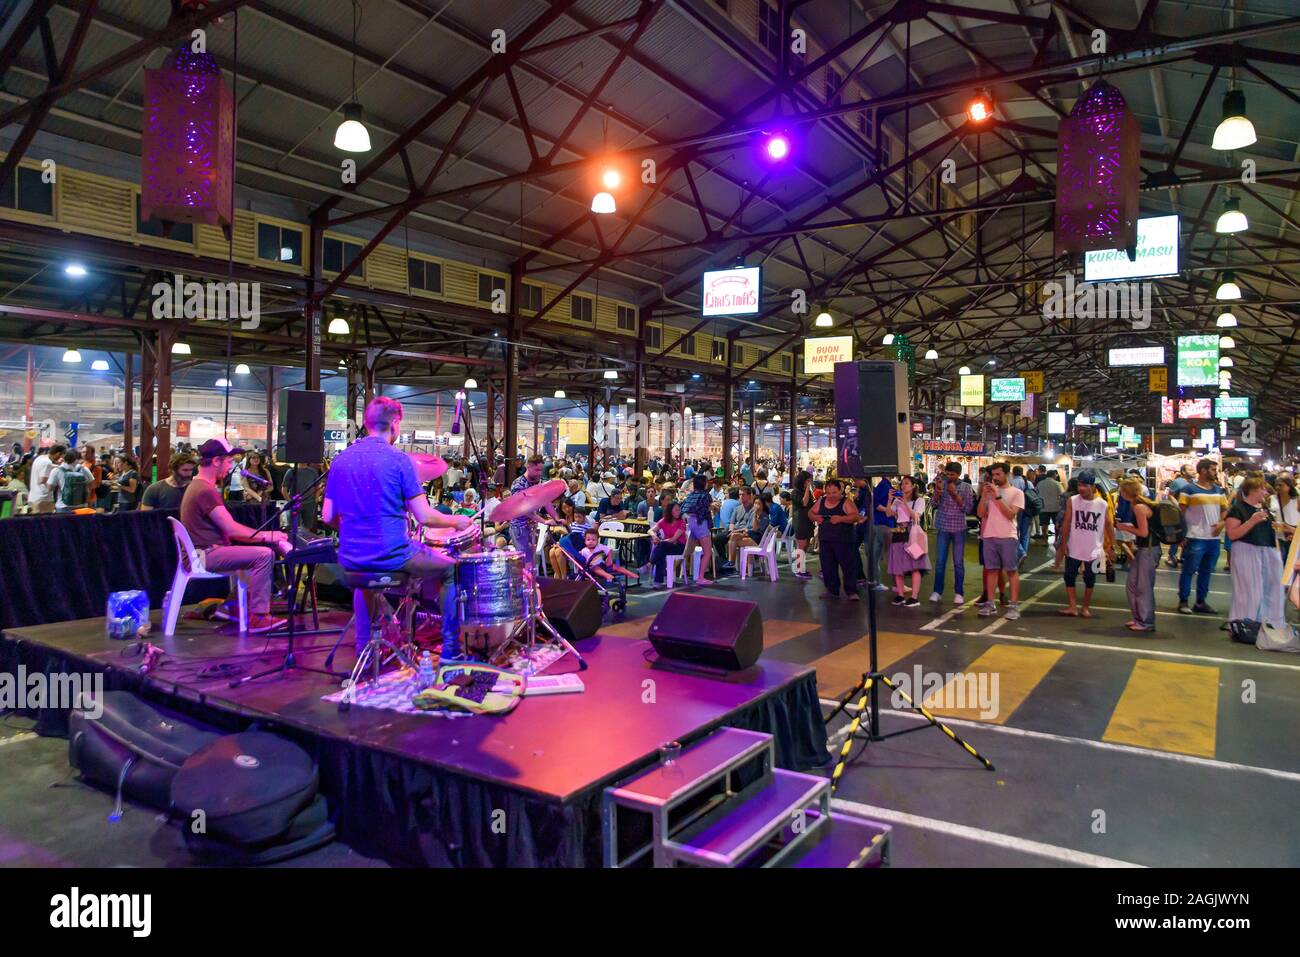 Spectacle de musique dans le marché de nuit de la Reine Victoria pour l'été à Melbourne, Australie Banque D'Images